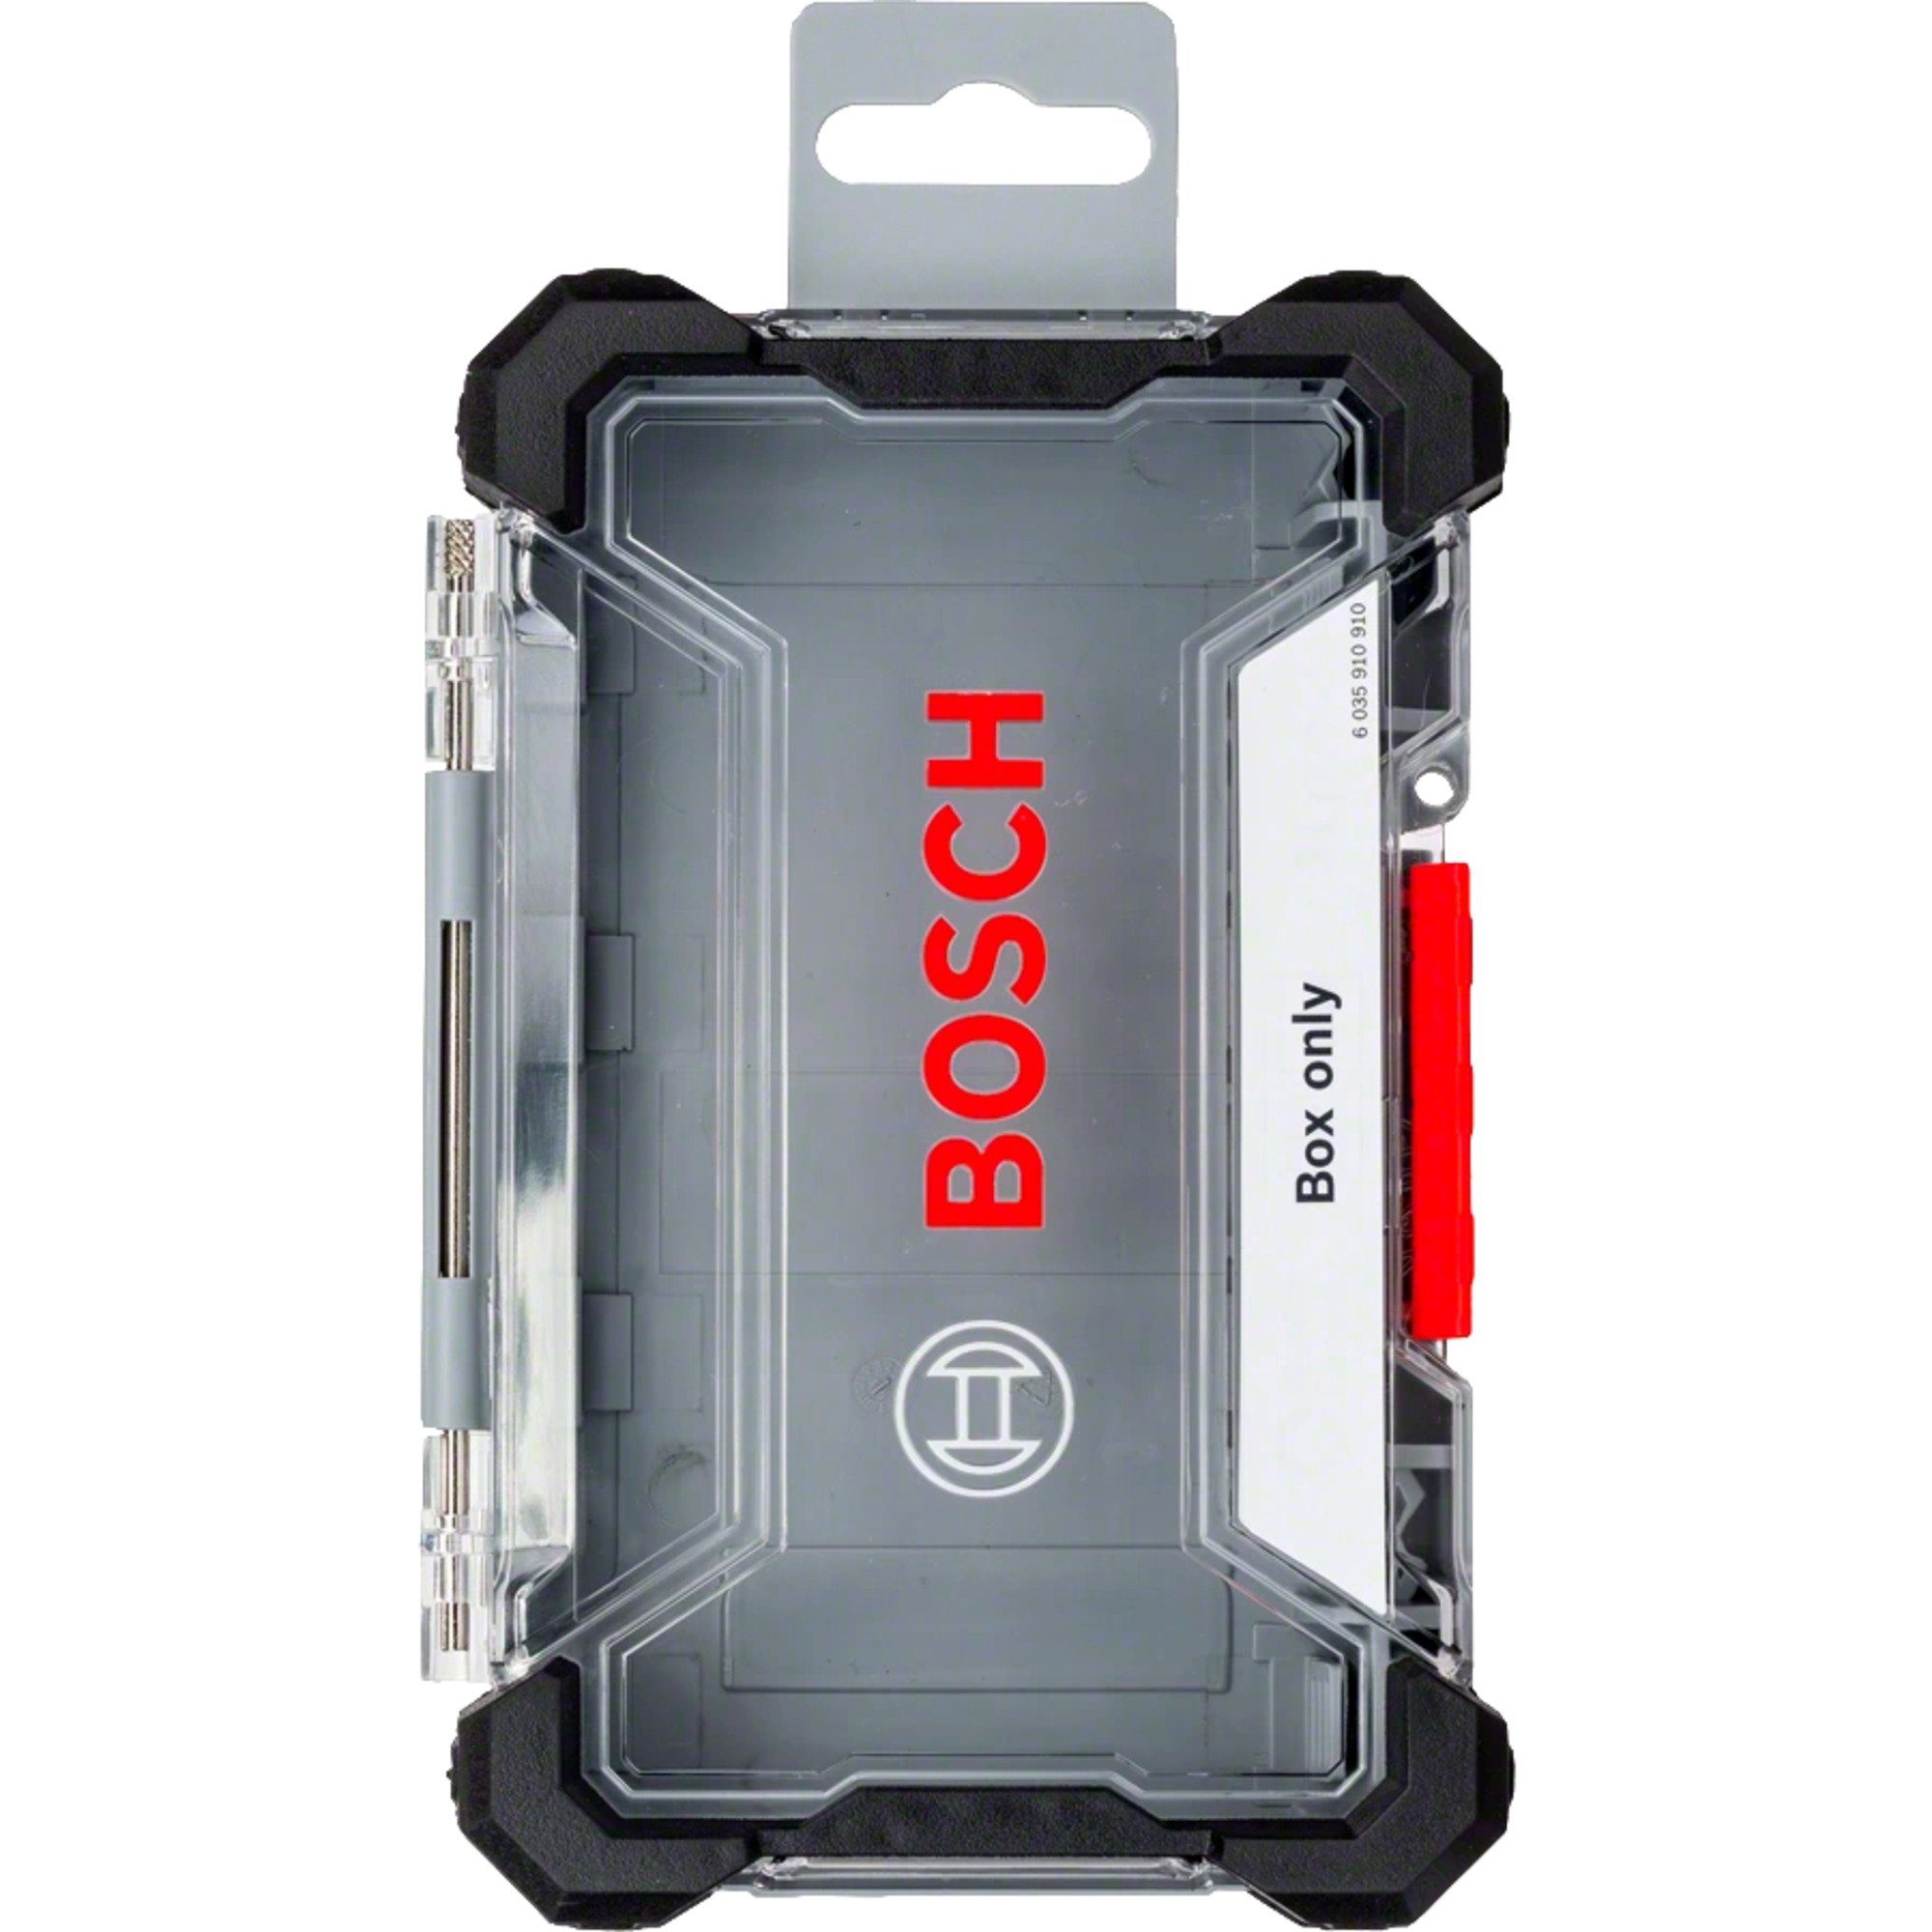 M Professional Werkzeugbox BOSCH Kassette Impact Bosch Größe